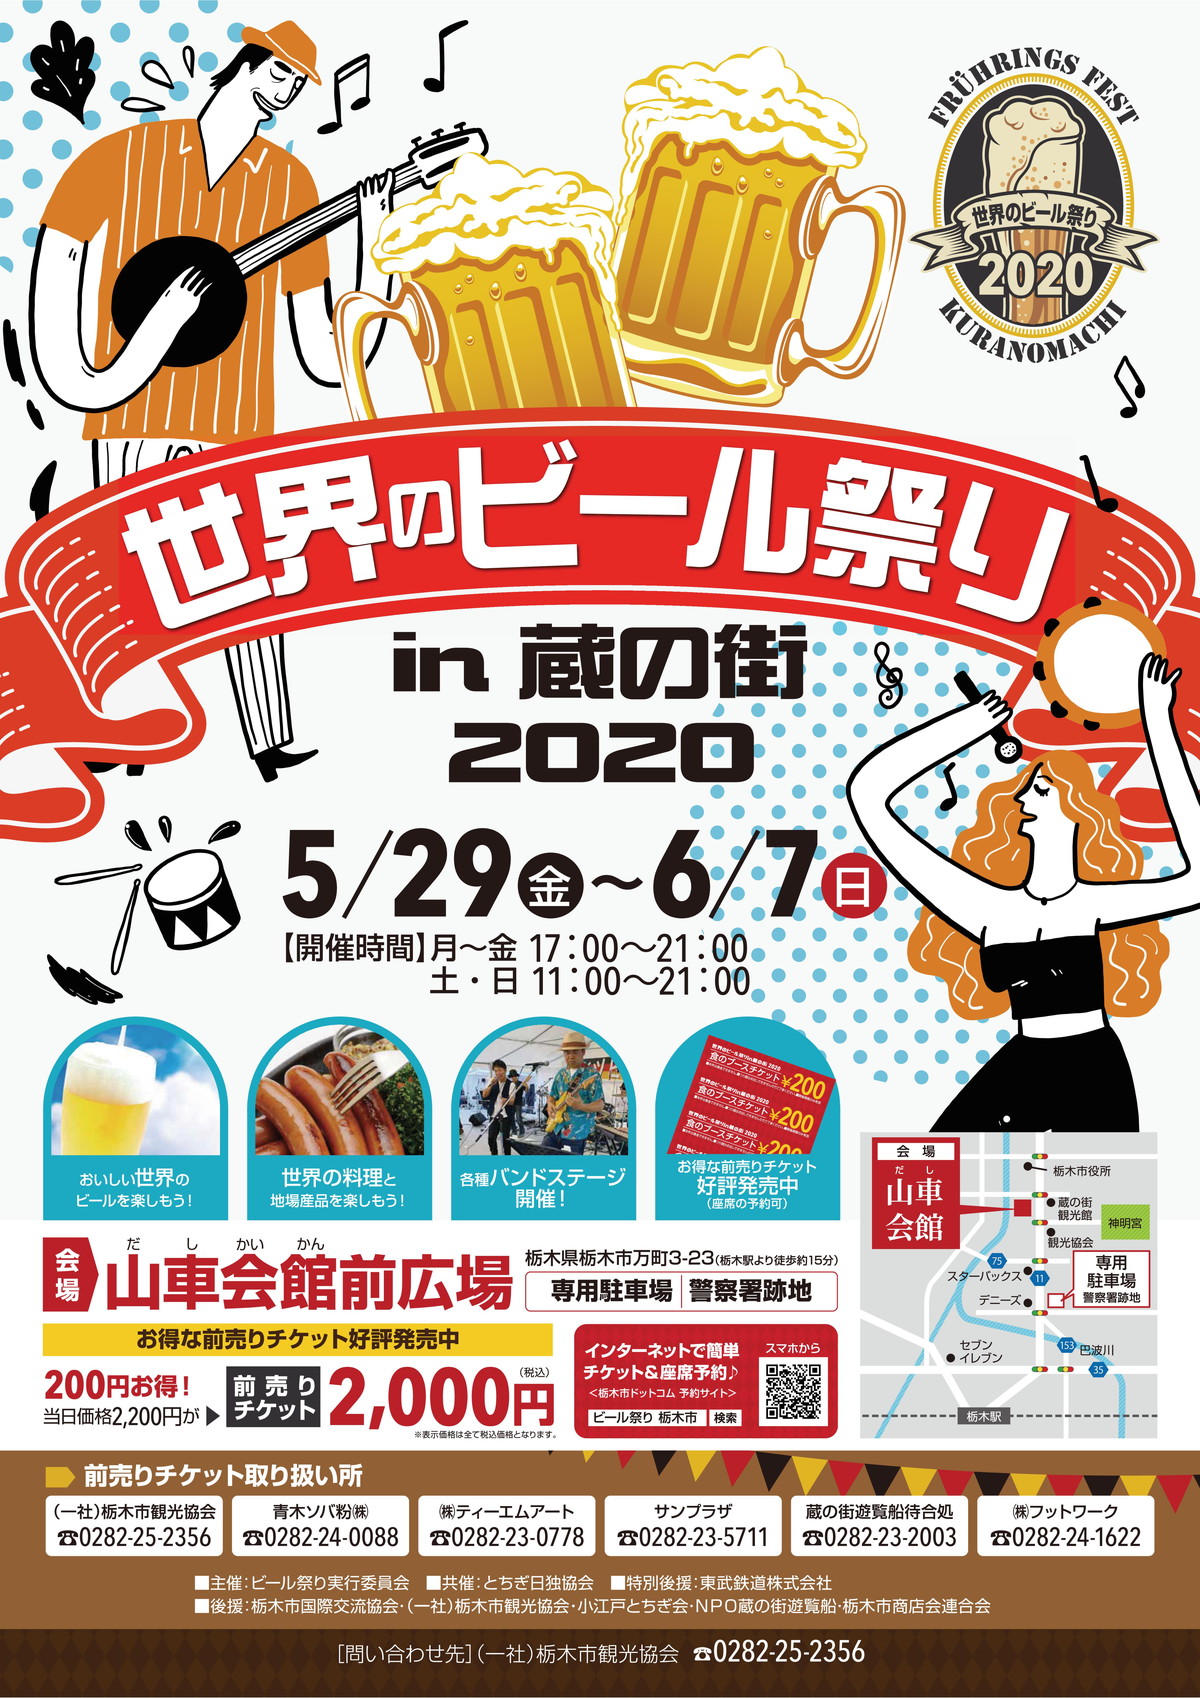 世界の音楽とビールと食の祭典【世界のビール祭り】-in 蔵の街 2020-